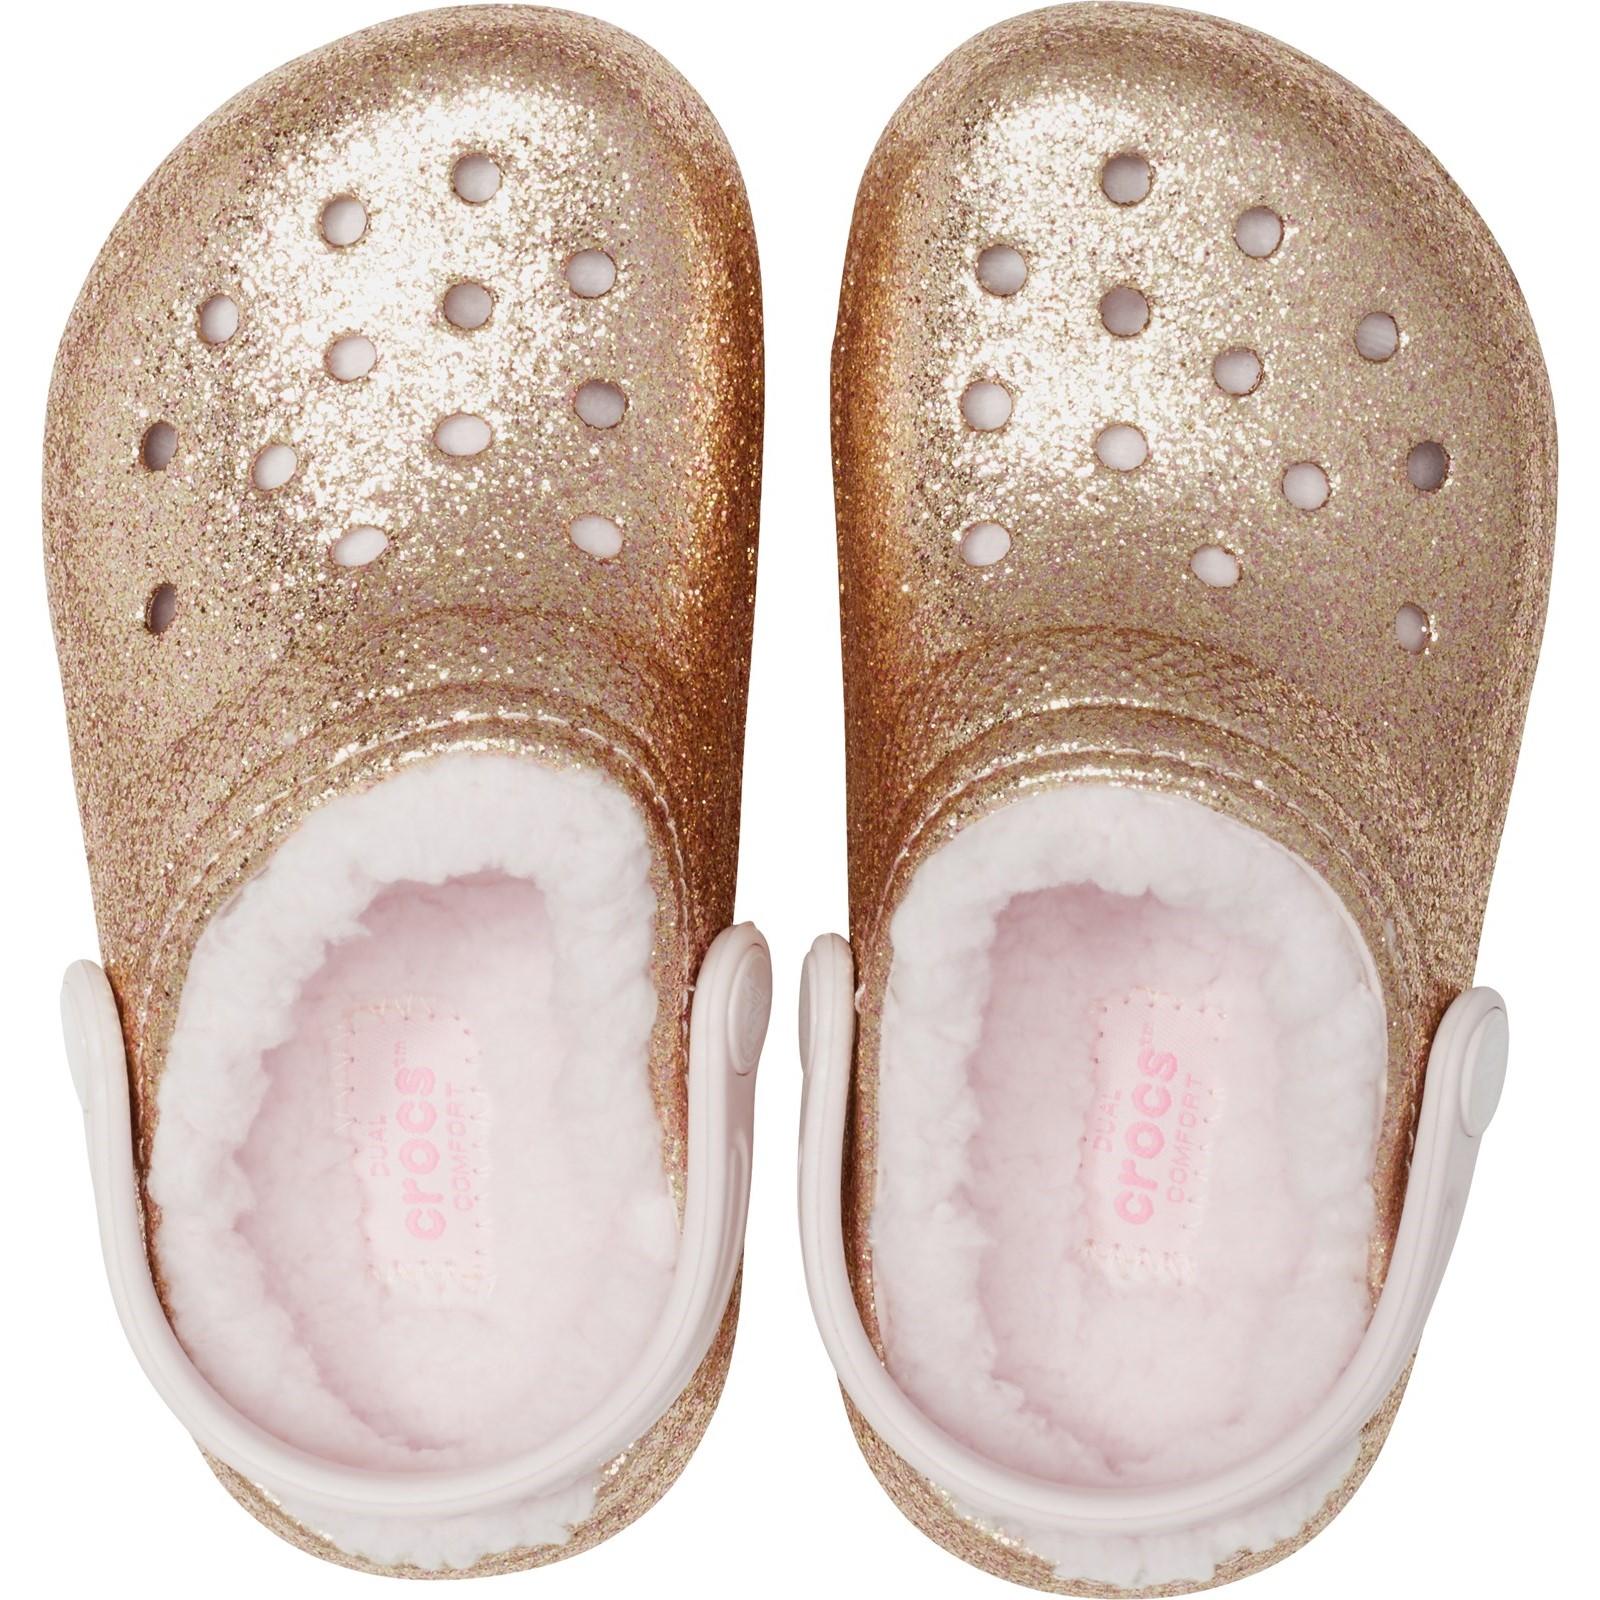 Crocs Kids' Classic Glitter Lined Clog Sandals